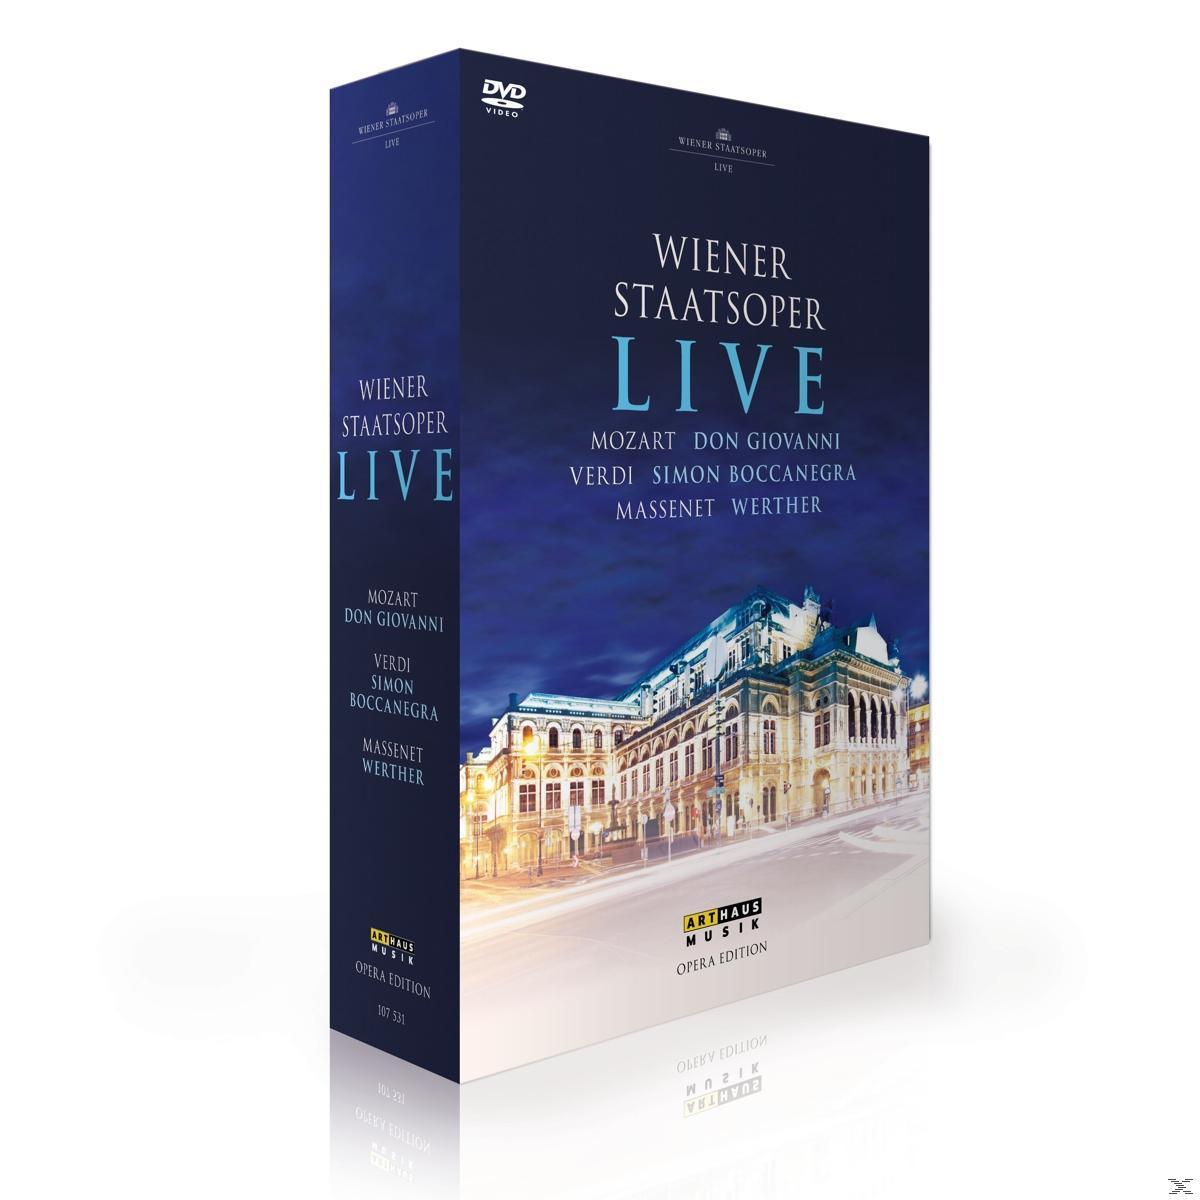 VARIOUS, Wiener Staatsoper Wiener (DVD) Live - - Staatsoper